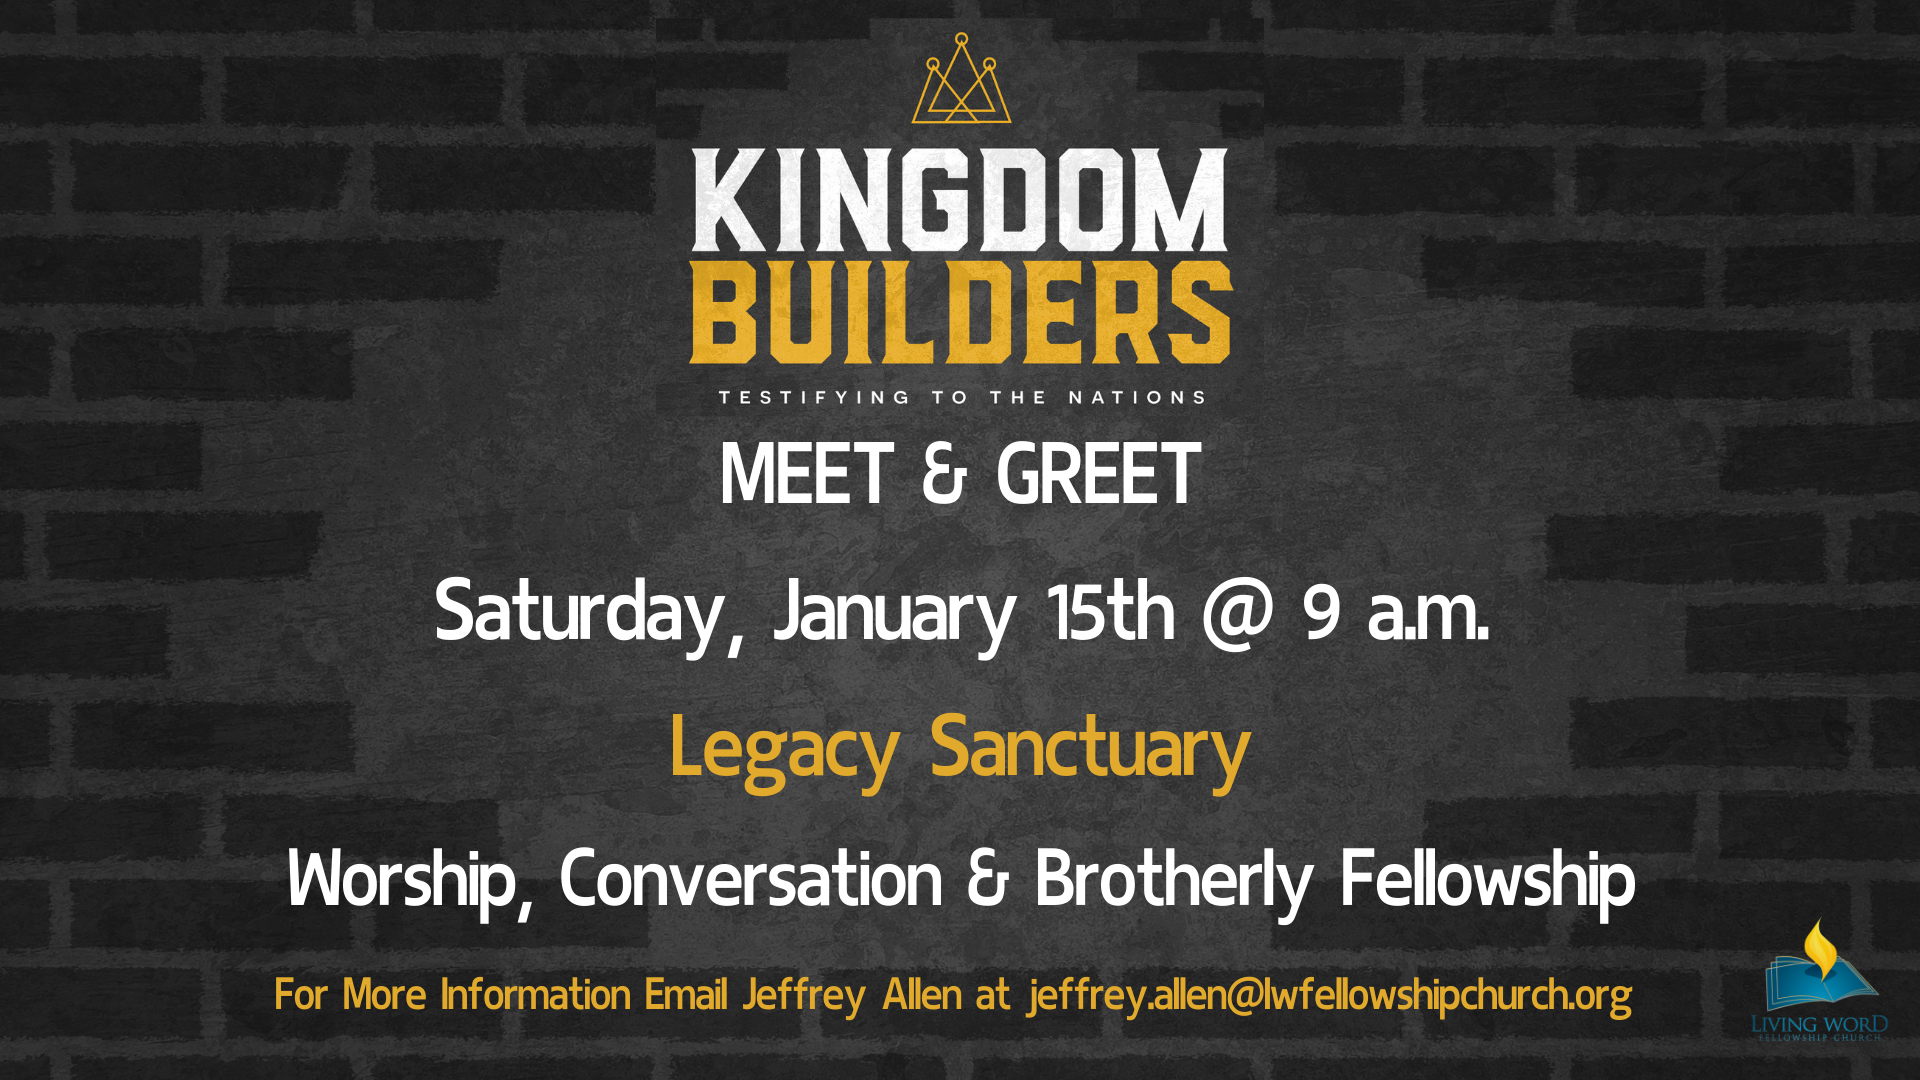 Kingdom Builders Men’s Ministry Meet & Greet head image